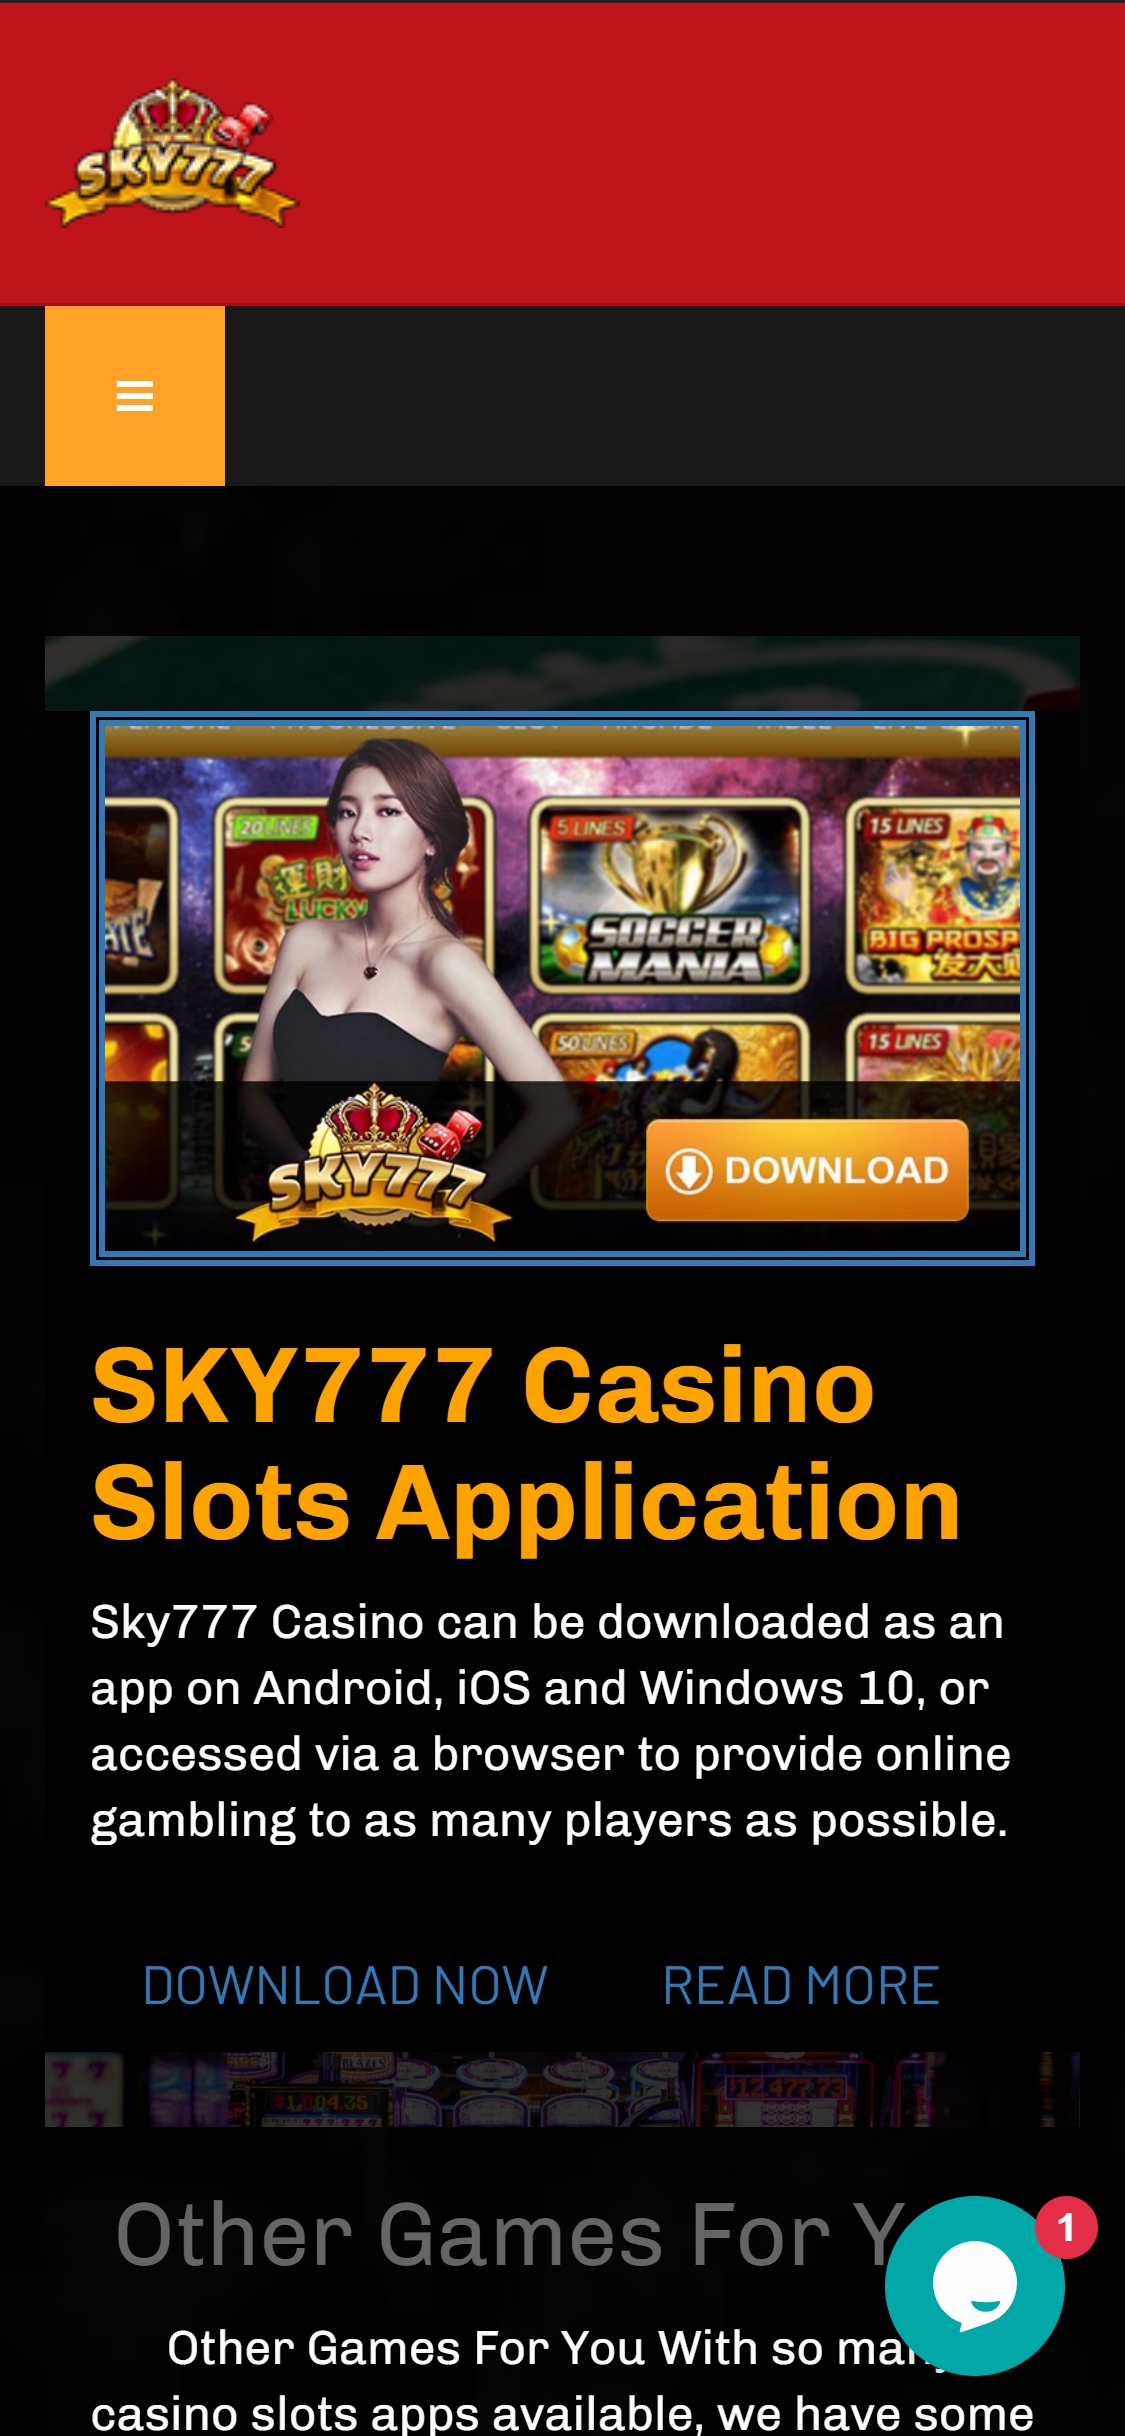 Sky777 Casino Mobile Review